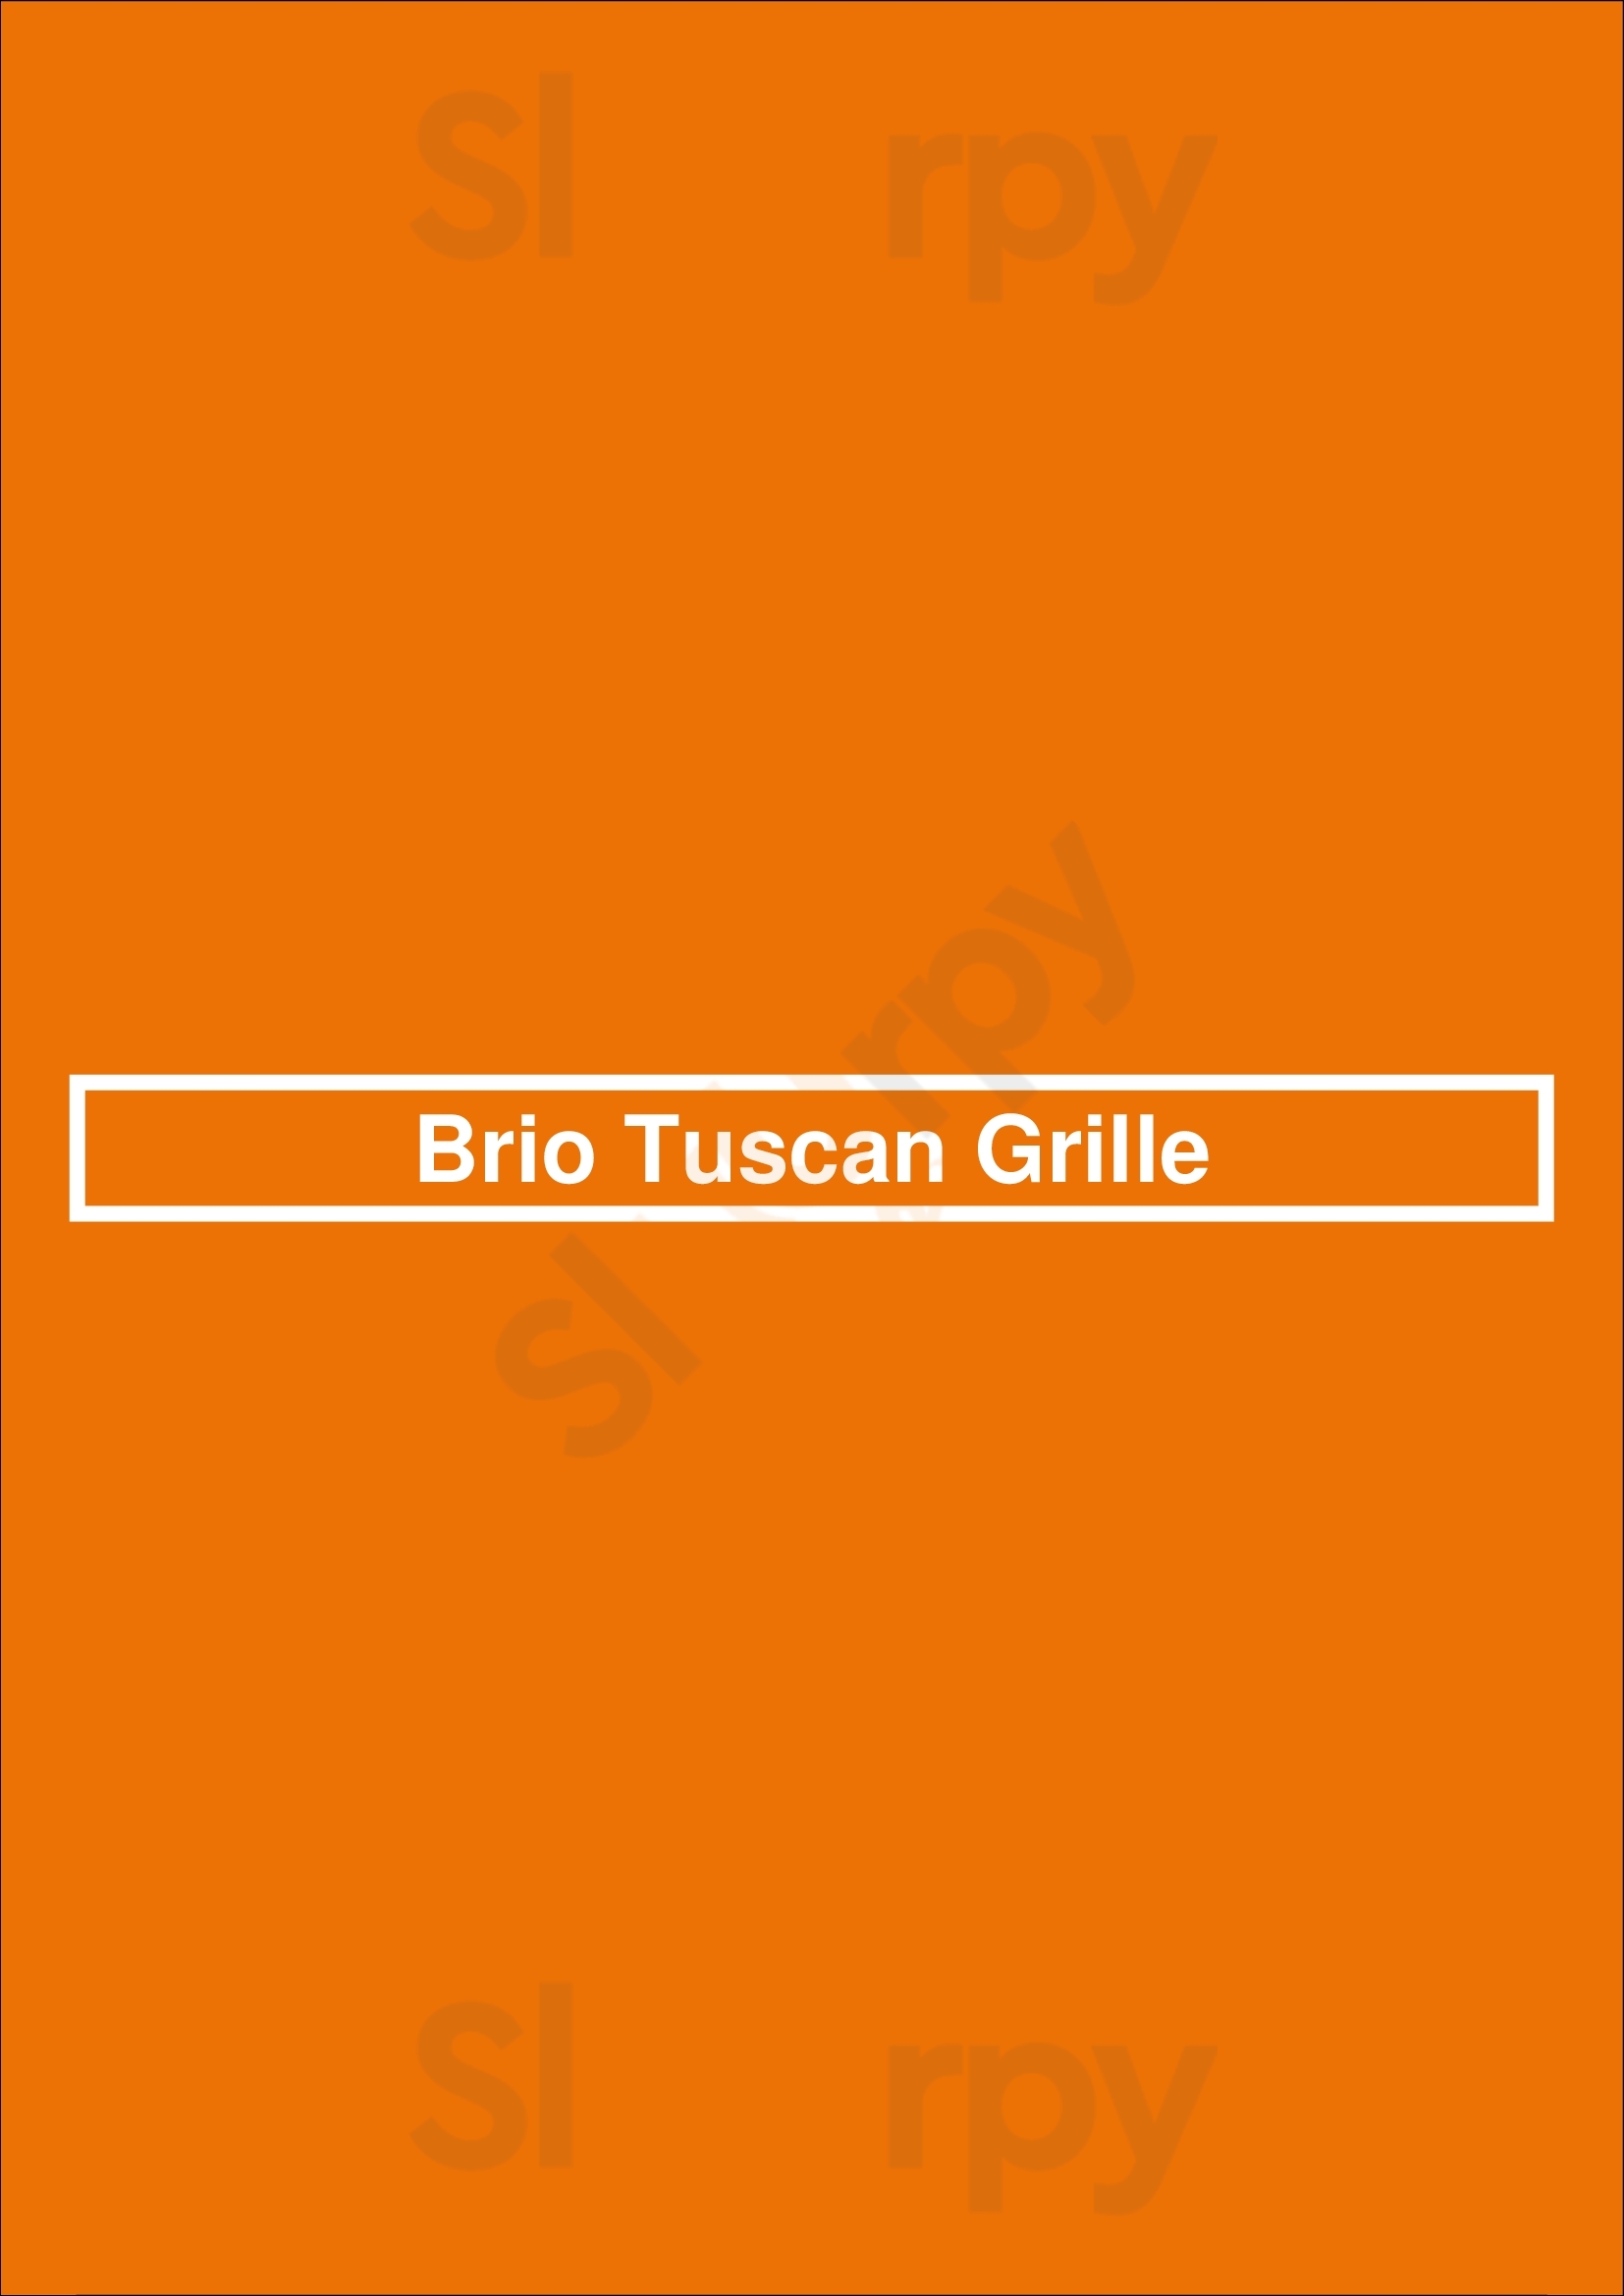 Brio Italian Grille Naples Menu - 1